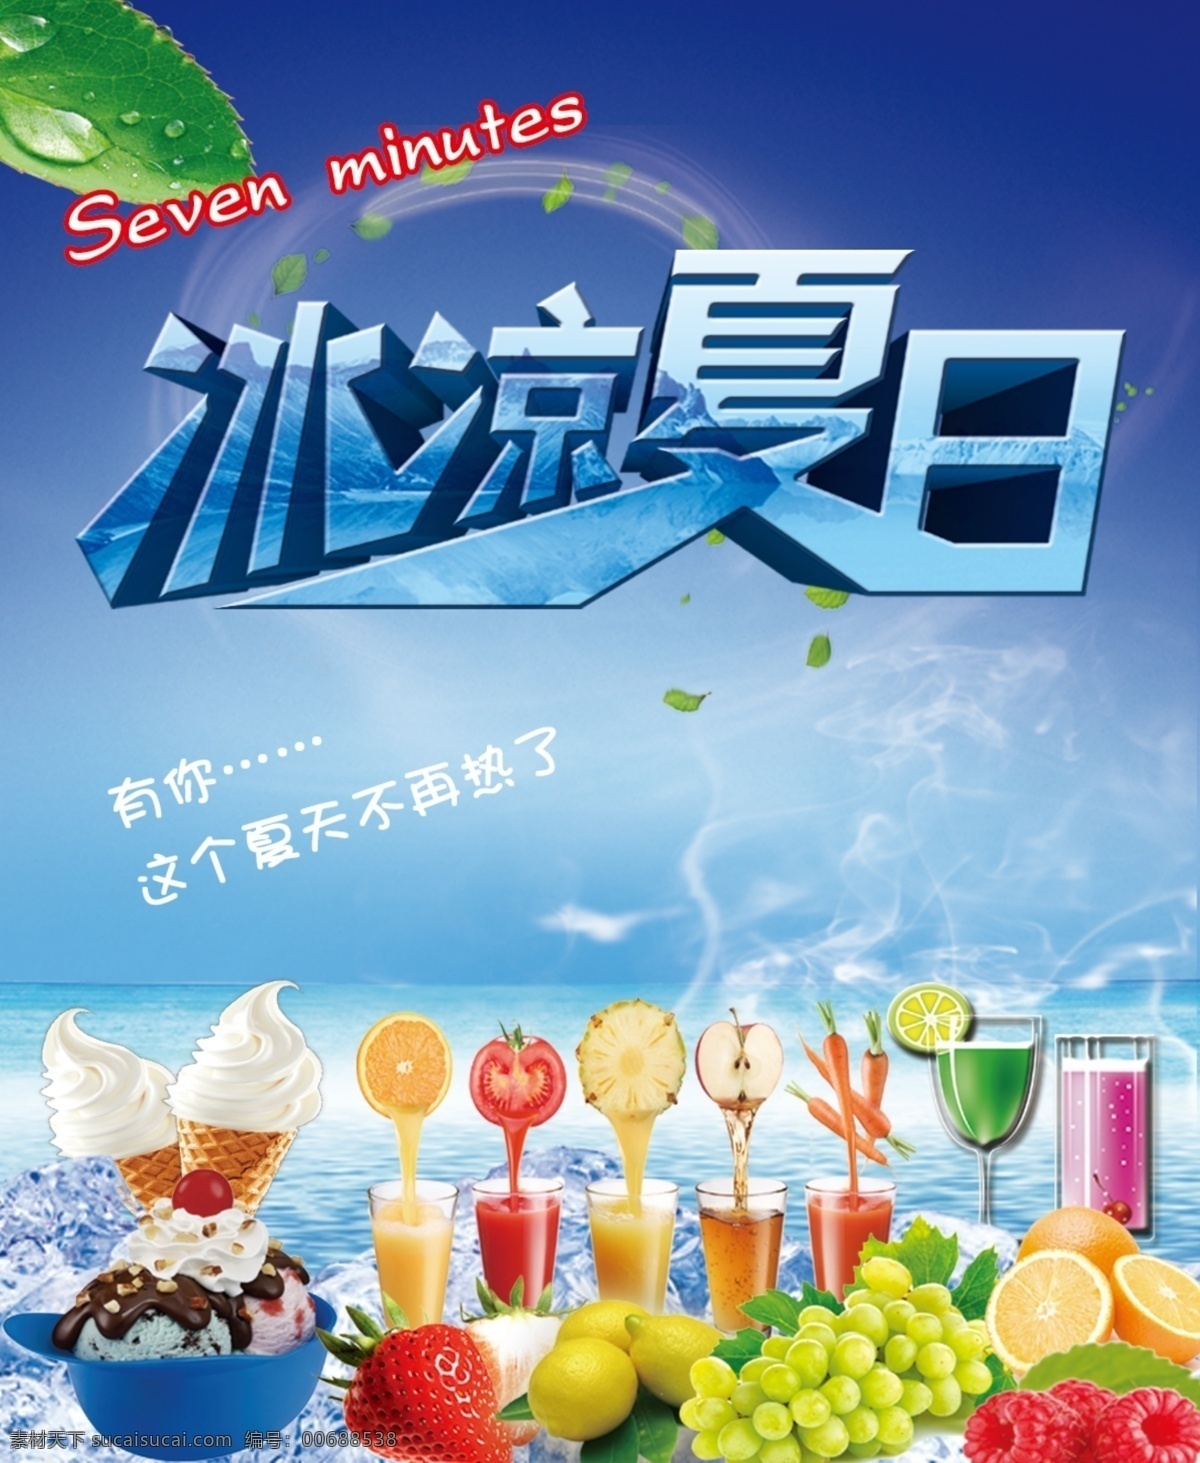 冷饮名片 各种果汁 水果 冰淇淋 文字 蓝色